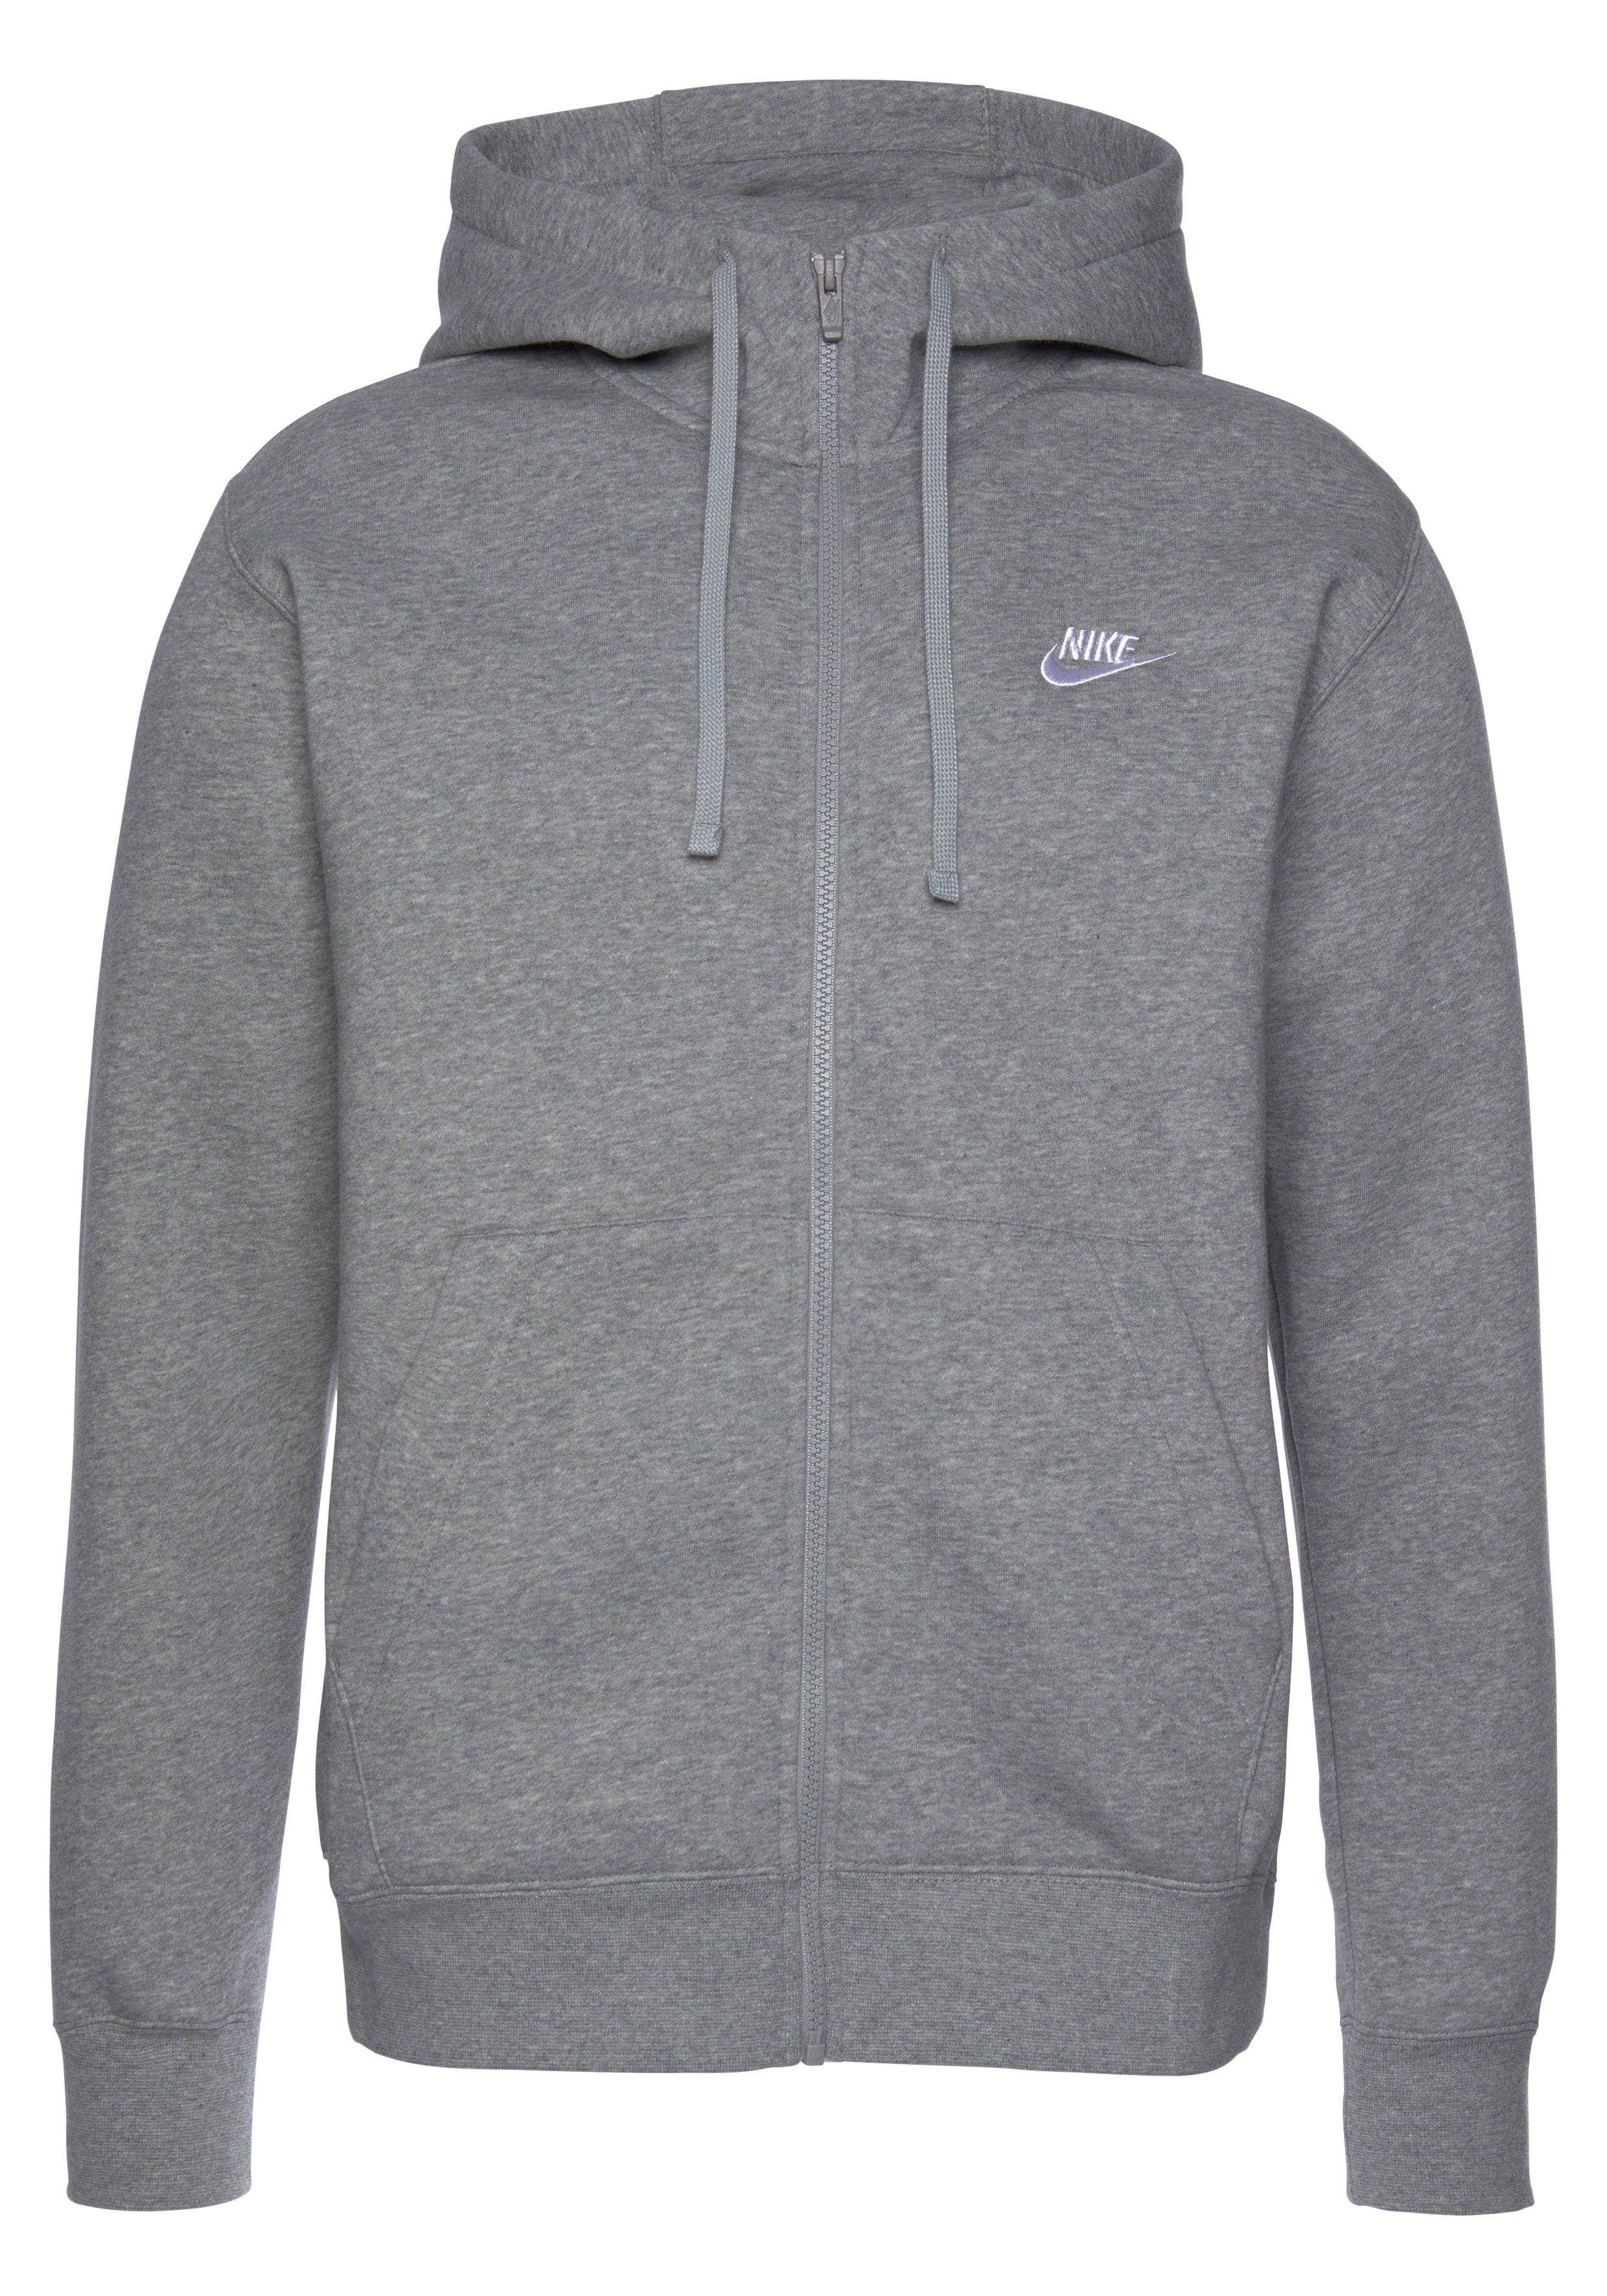 Fleece grau Nike Hoodie Sweatjacke Sportswear Full-Zip Men's Club